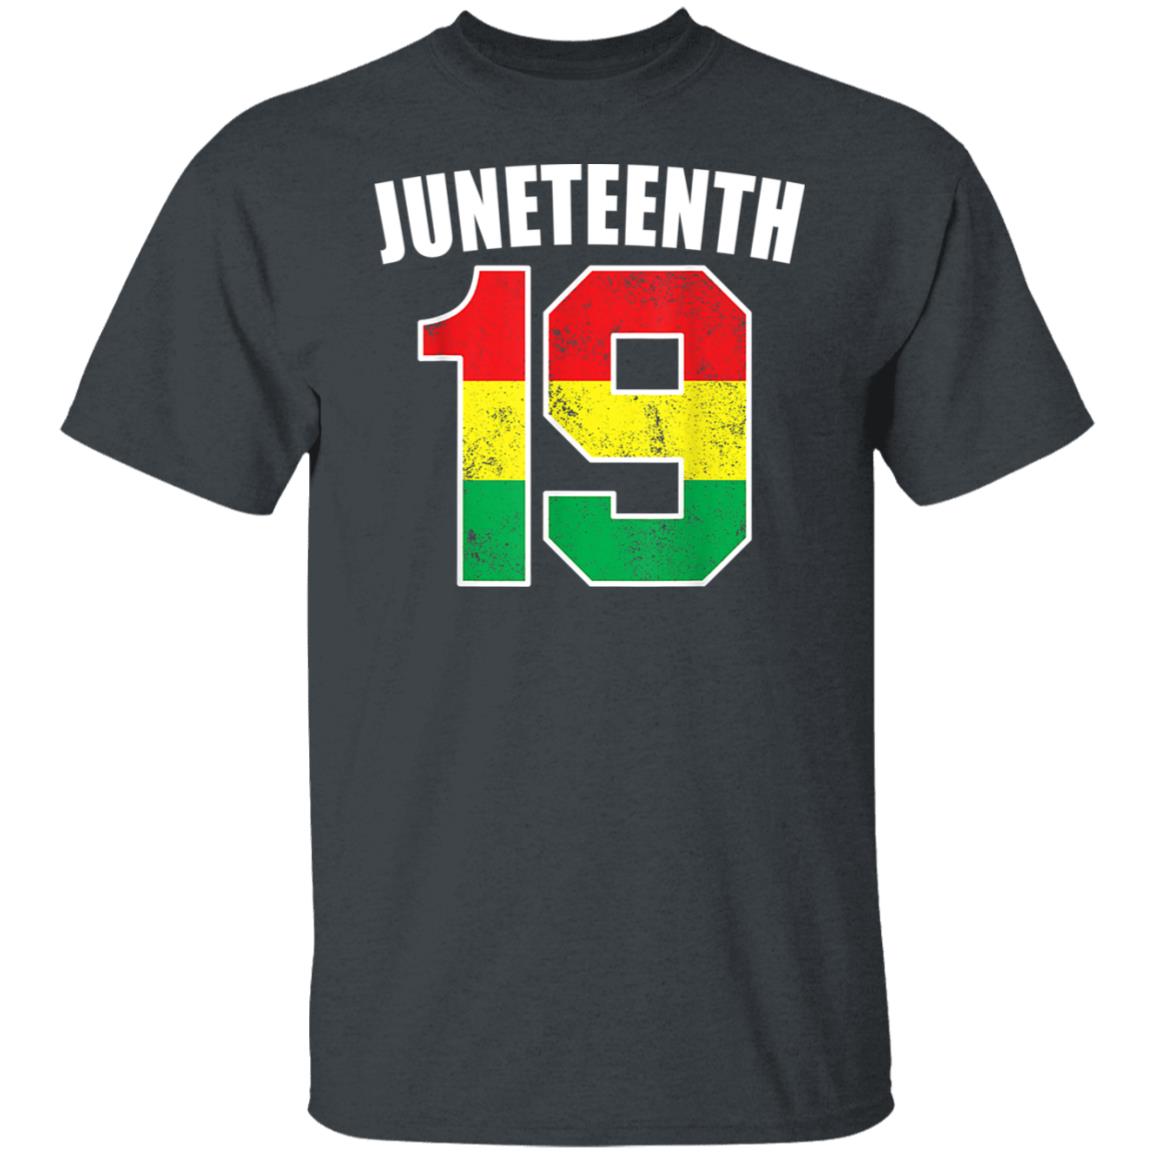 Juneteenth 19 Jersey Black American Freedom Juneteenth Shirt